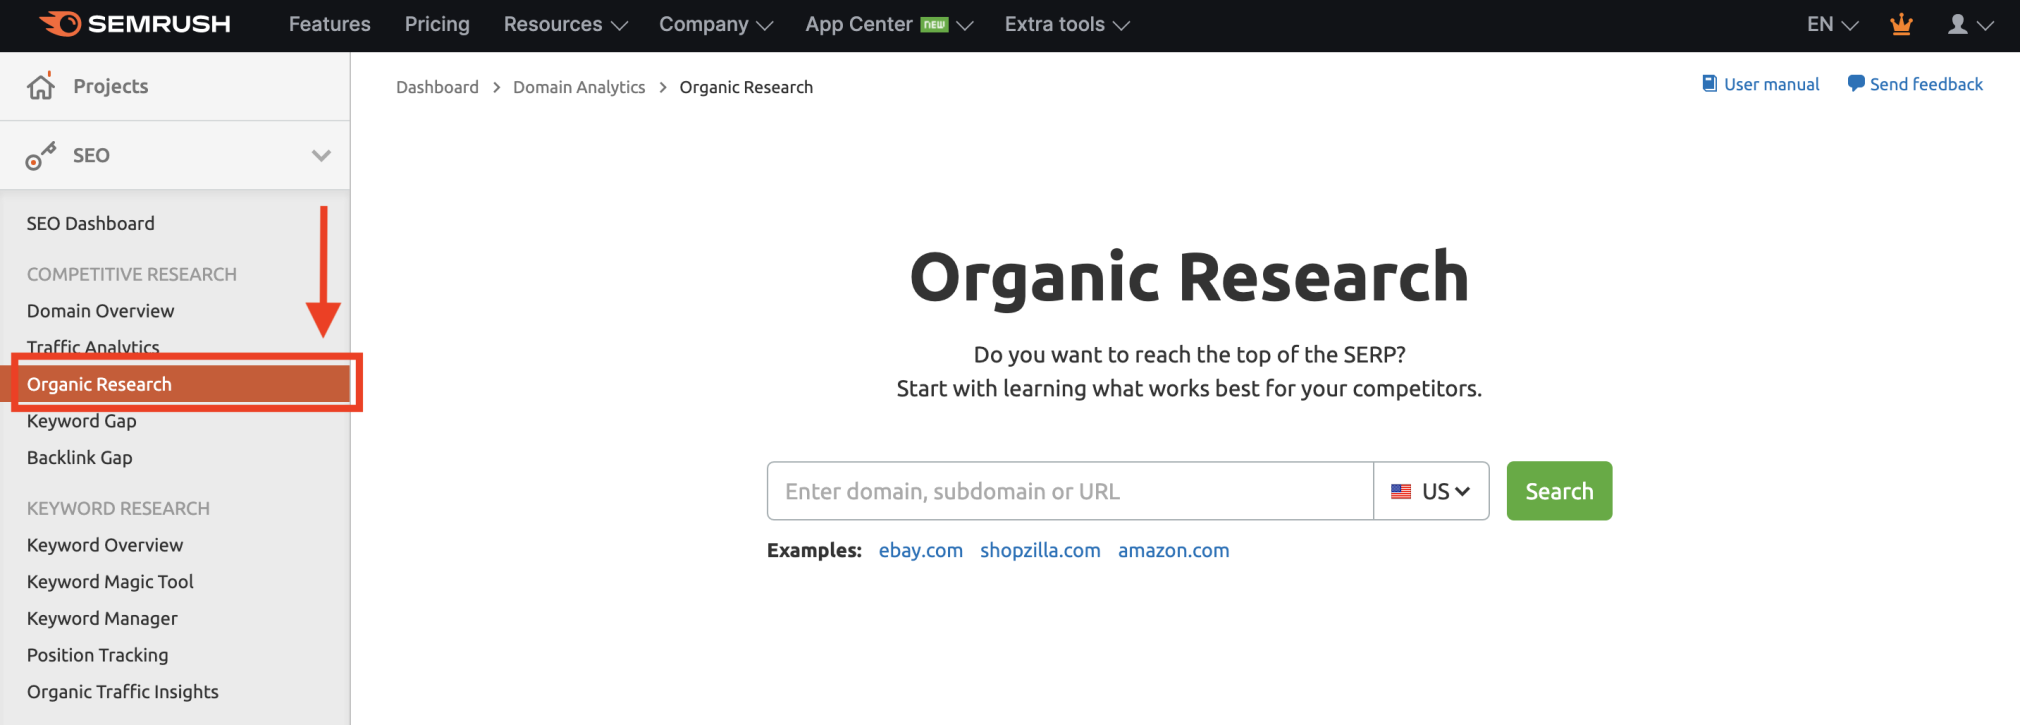 Organic Research tool